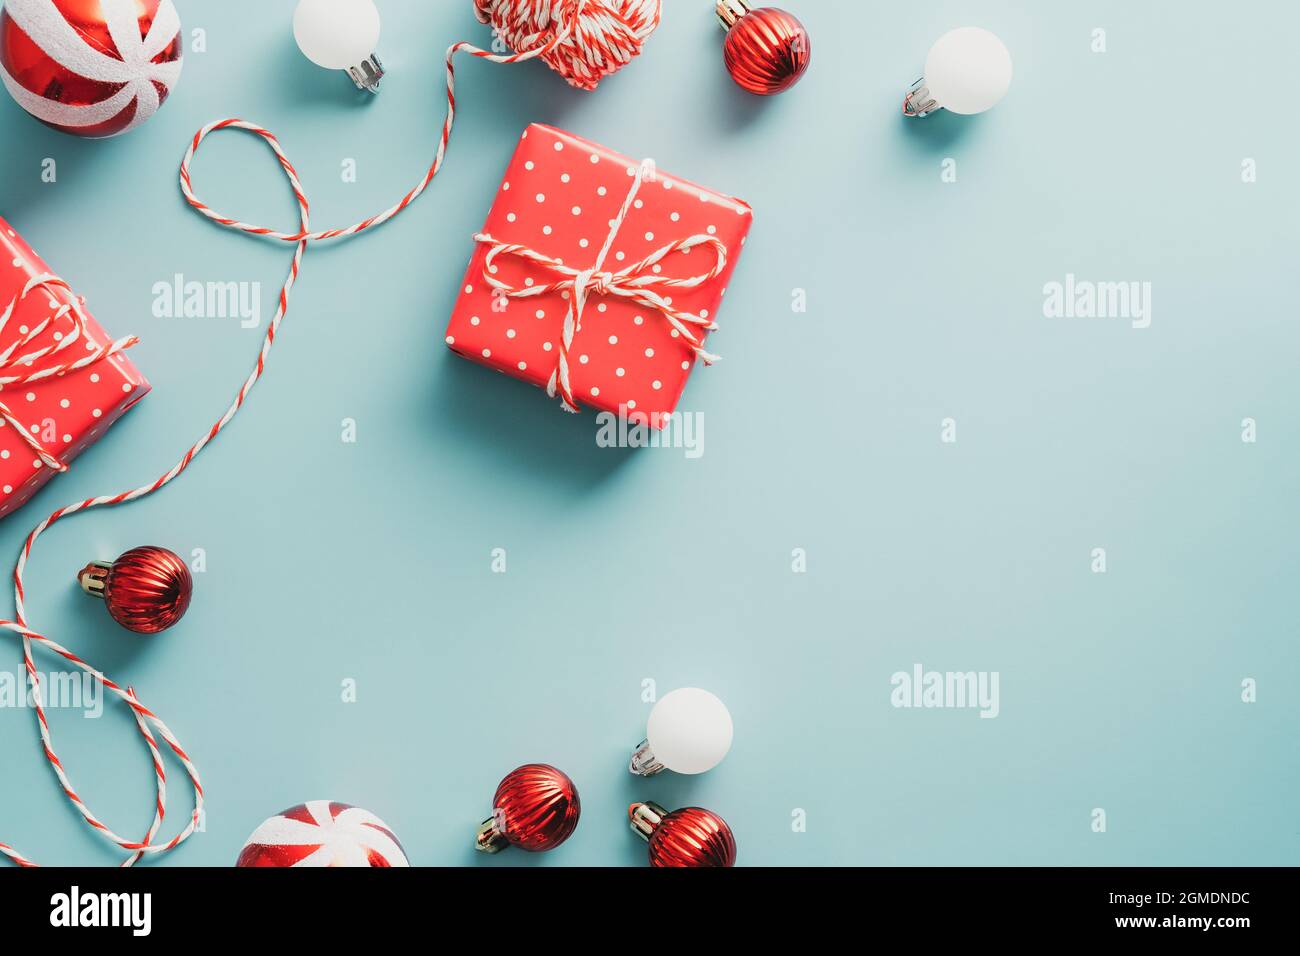 Vintage-Weihnachts-Postkarte. Flach liegend, Draufsicht gestreifte Kugeln, Band, Geschenkboxen auf blauem Hintergrund. Stockfoto